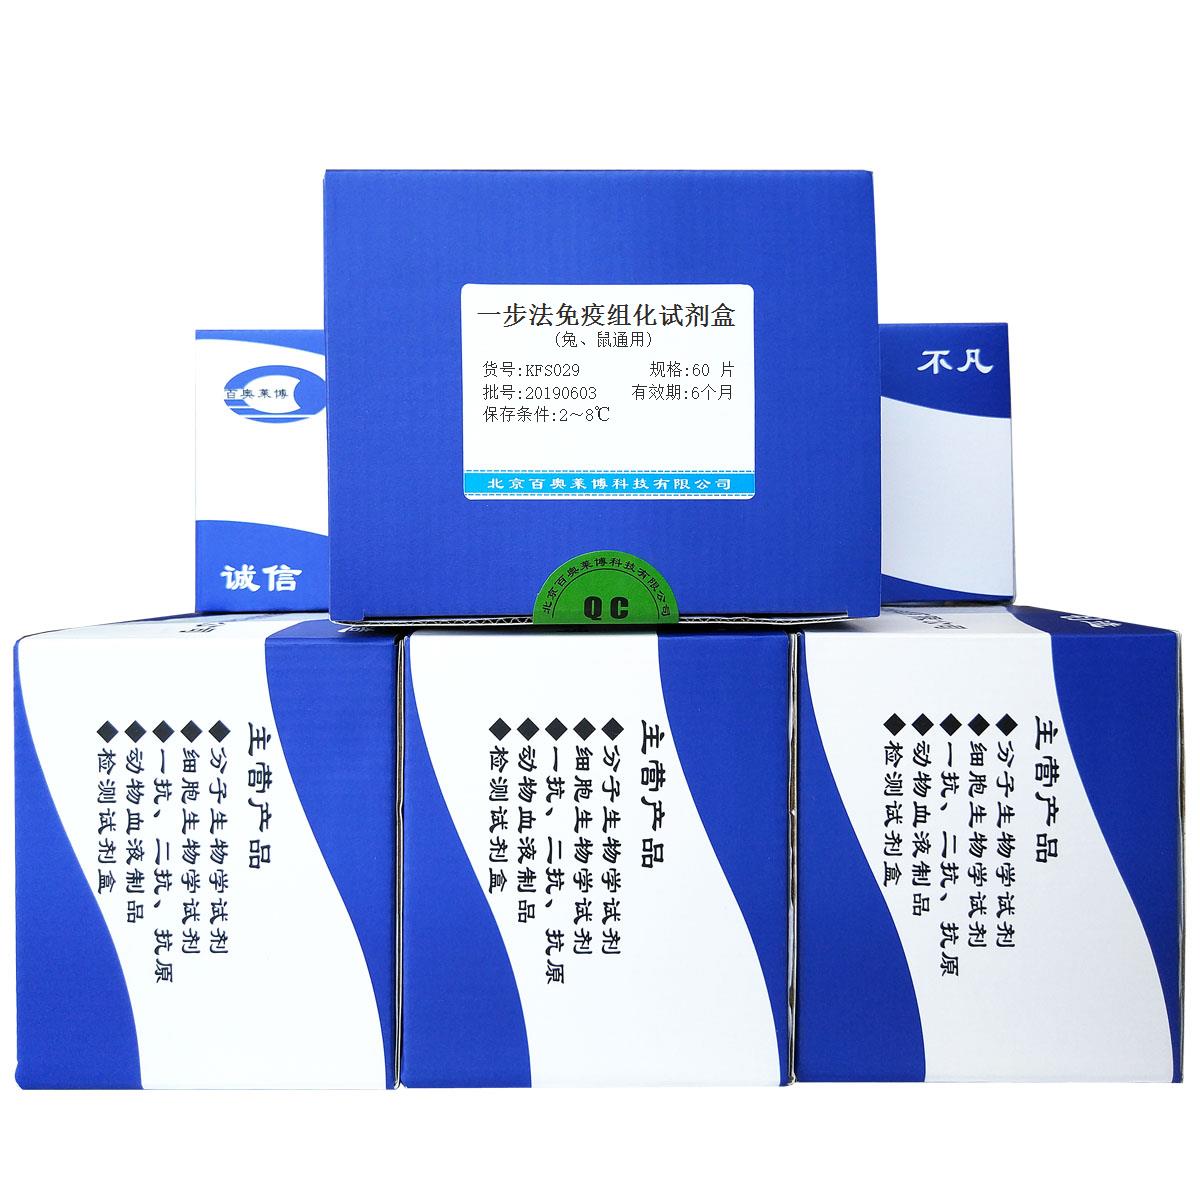 一步法免疫组化试剂盒(兔、鼠通用)北京厂家